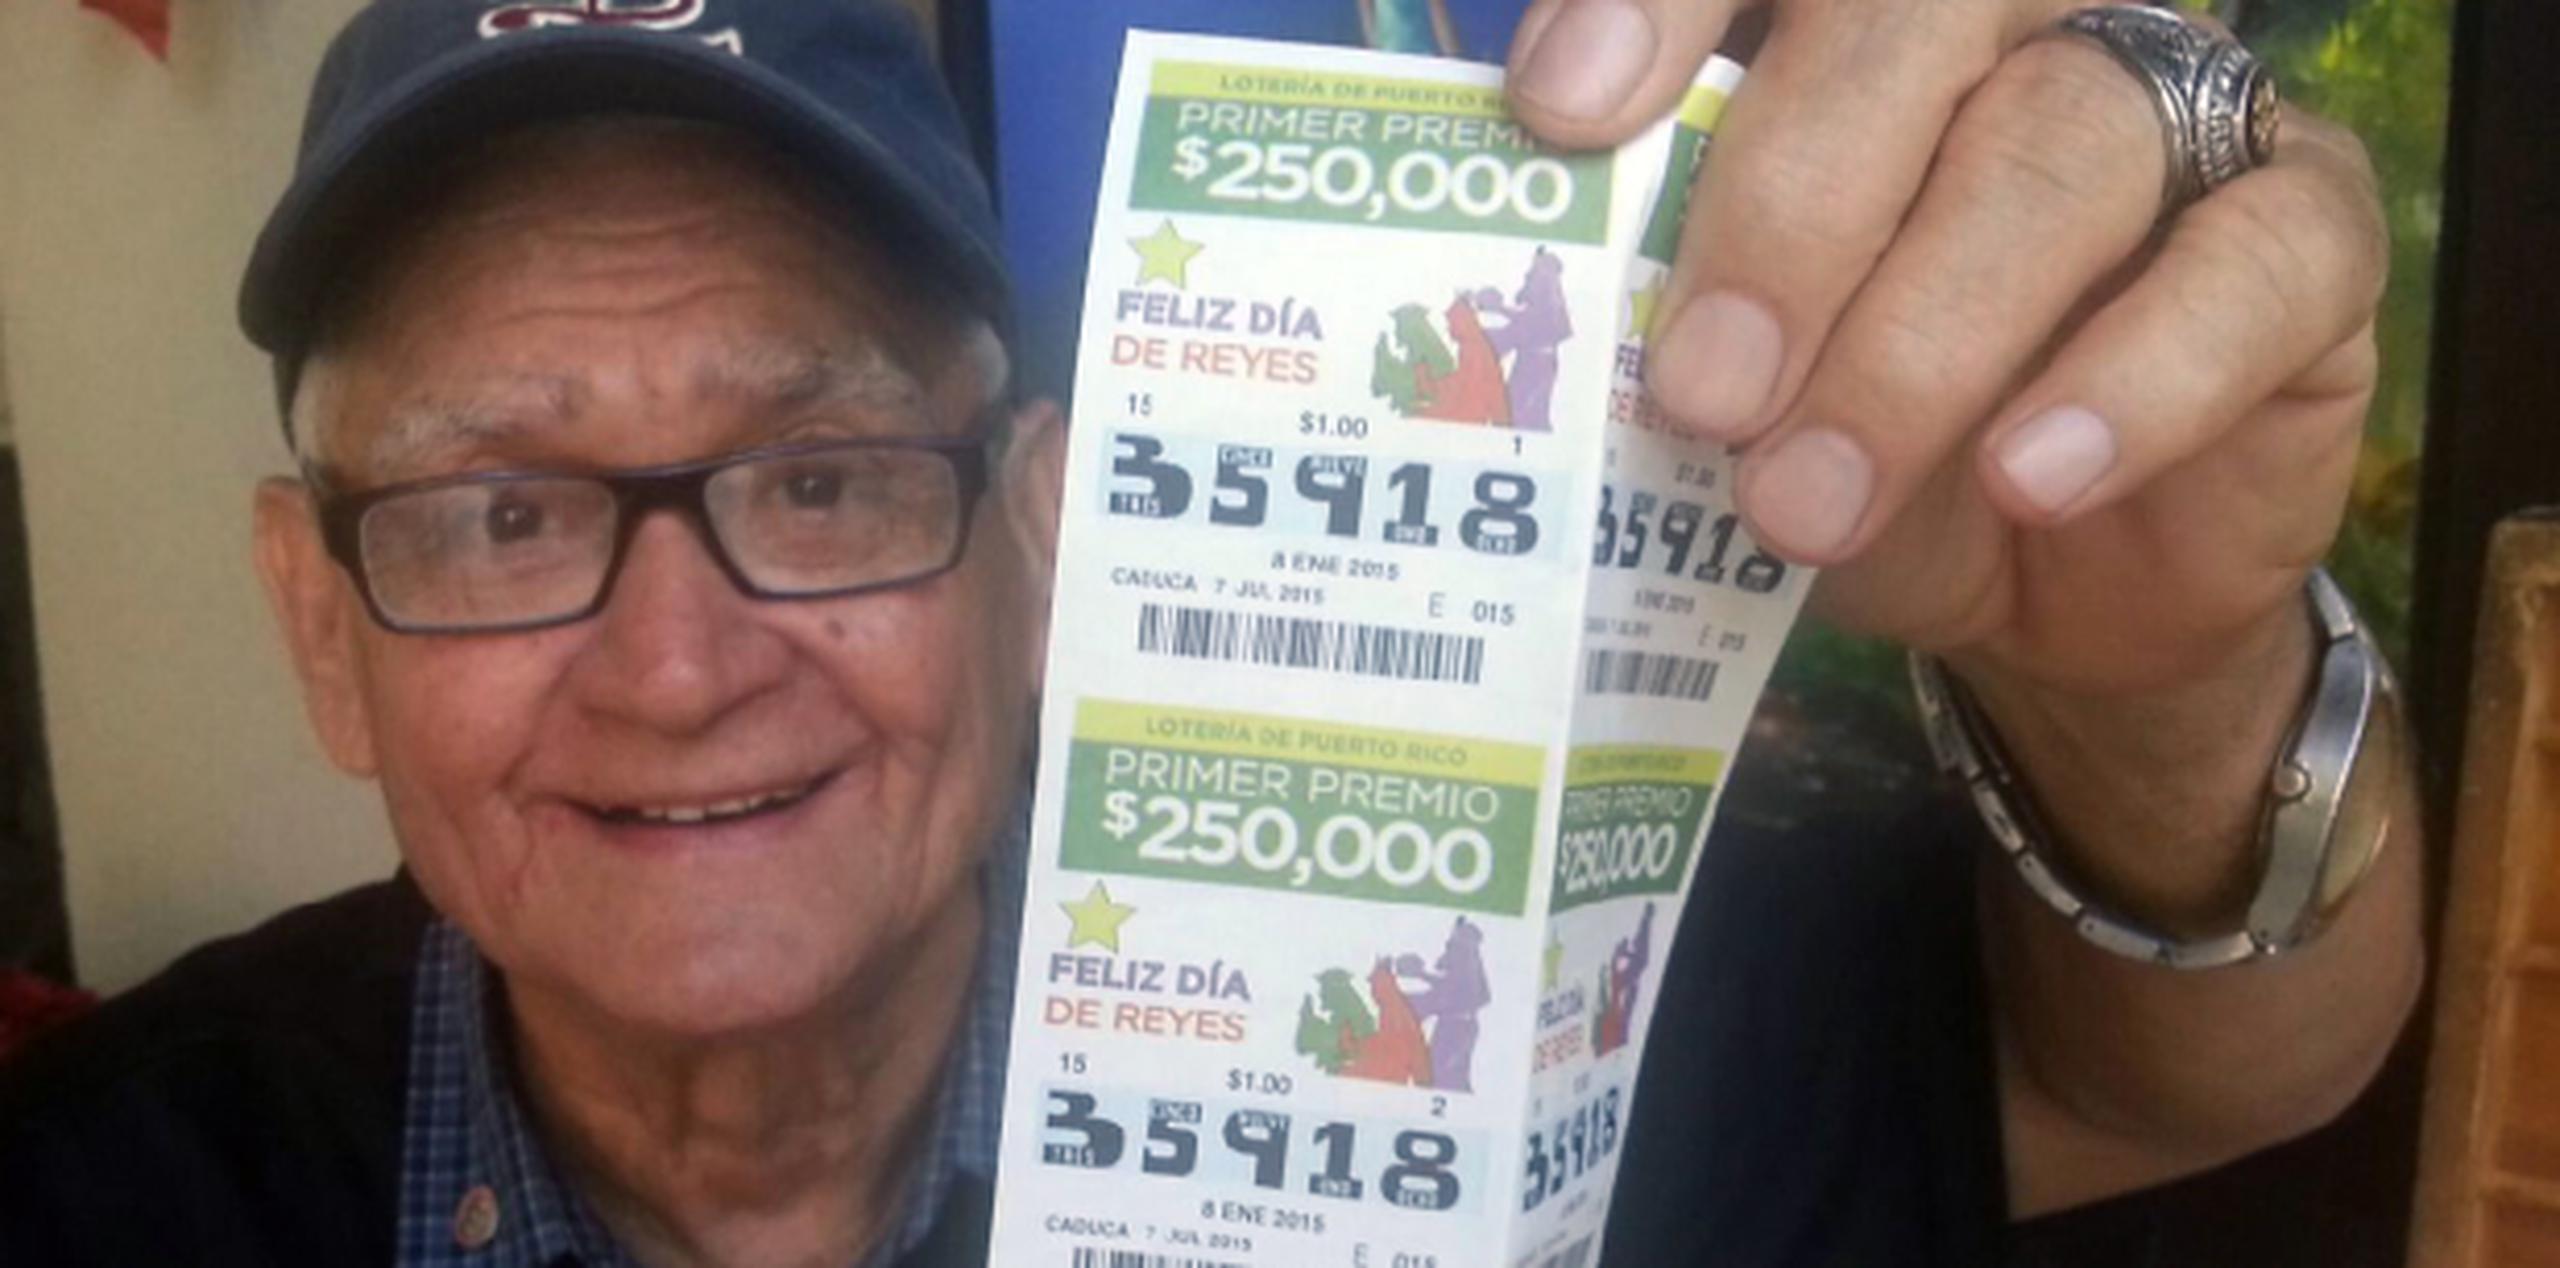 Los nuevos billetes de la Lotería tradicional tienen un diseño más sencillo que excluye el escudo de Puerto Rico y la firma del secretario de Hacienda. (Suministrada)